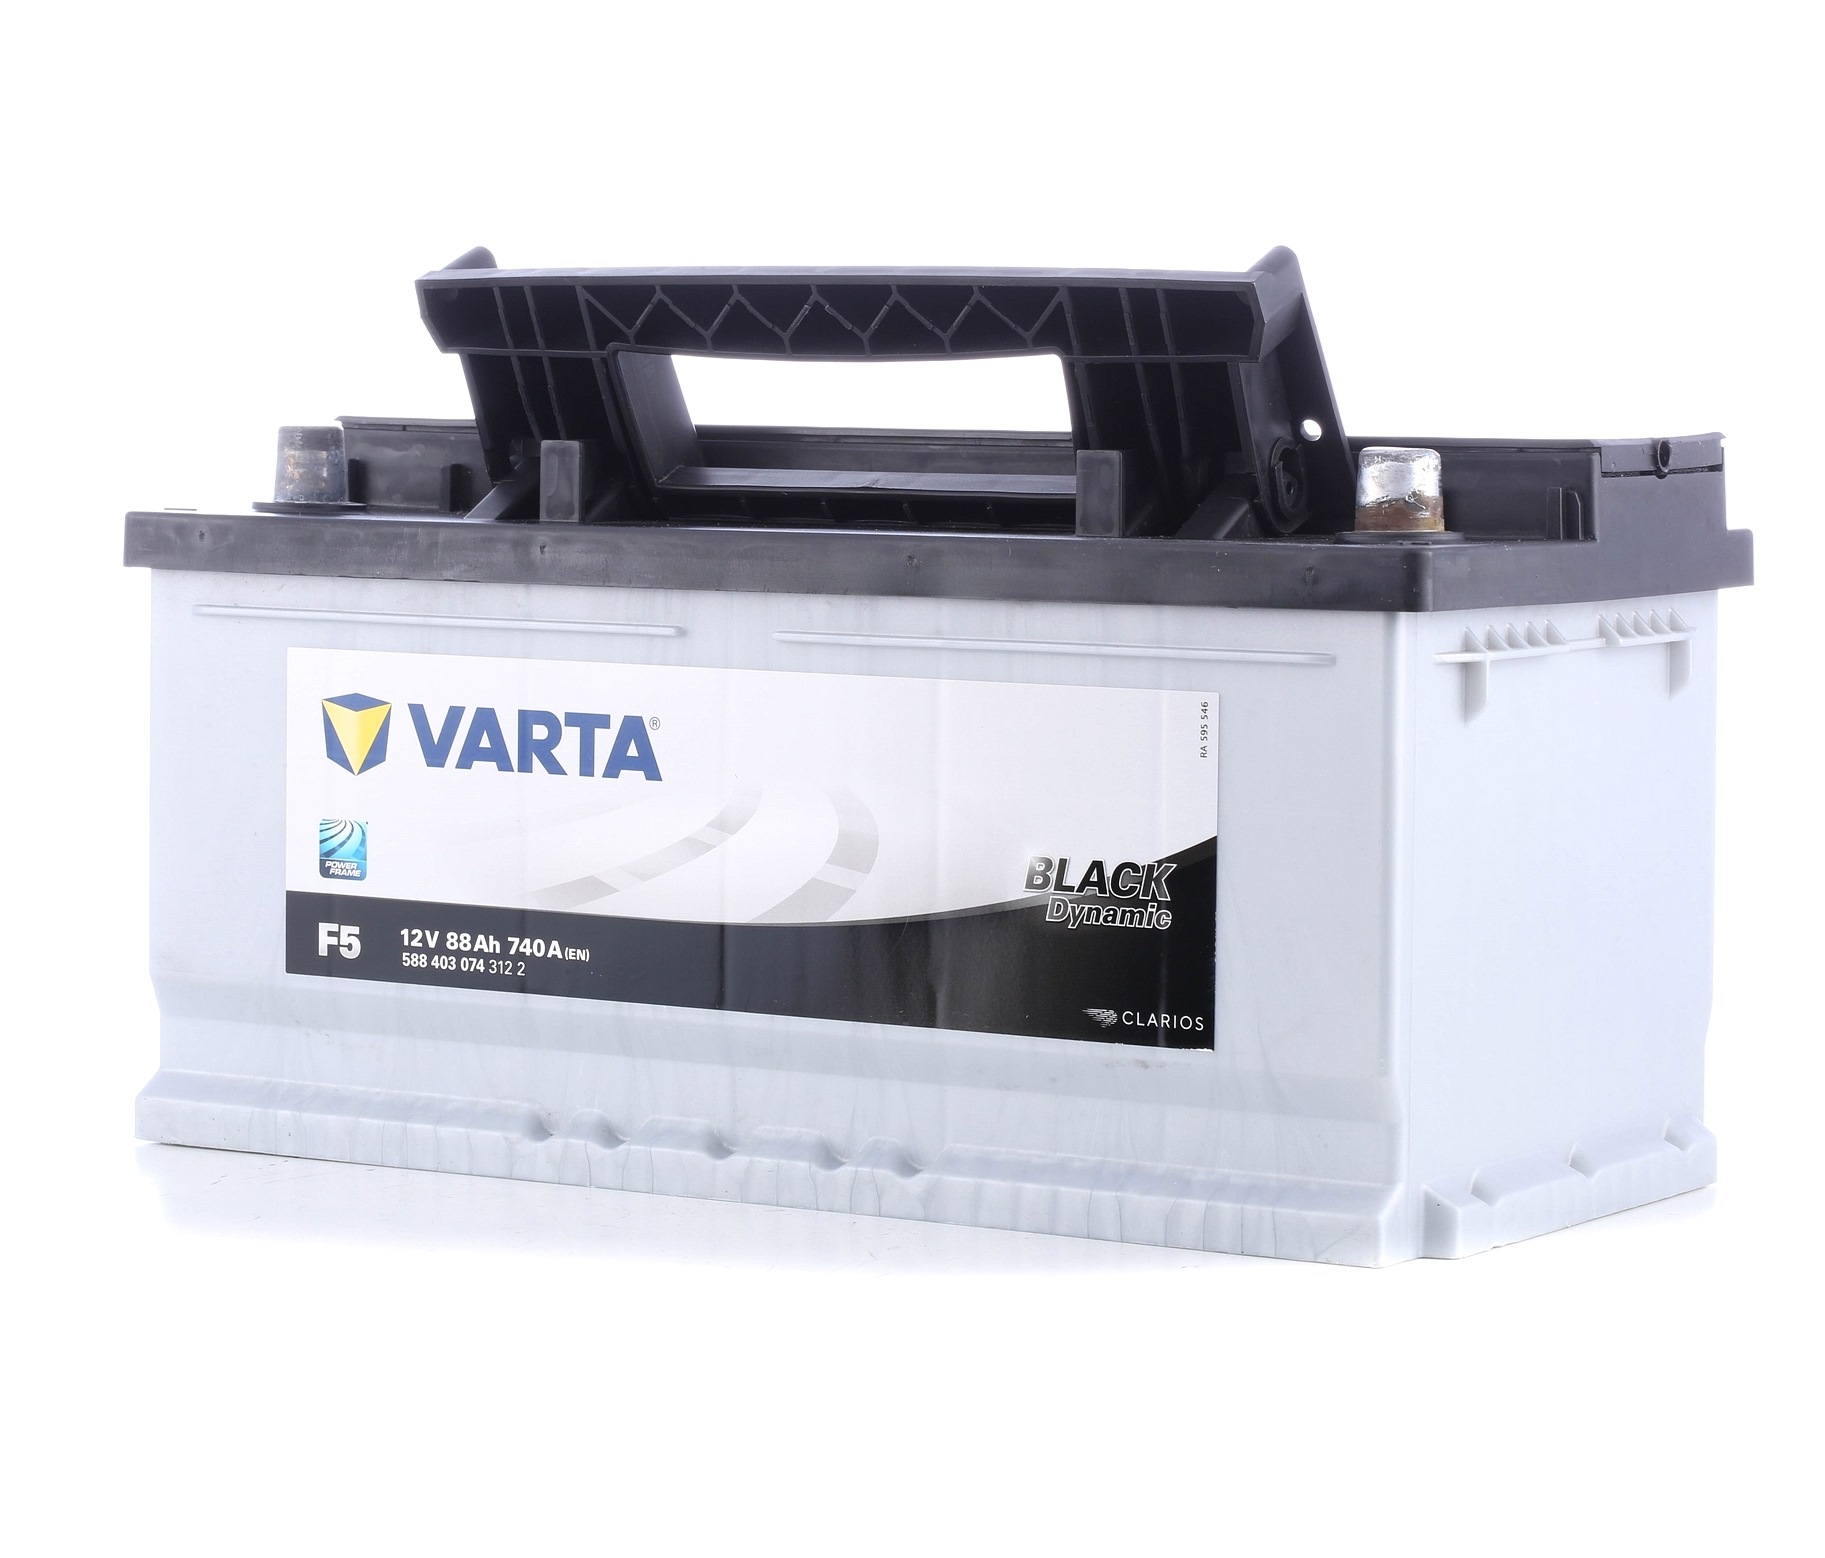 F5 VARTA BLACK dynamic F5 5884030743122 Battery 30659796